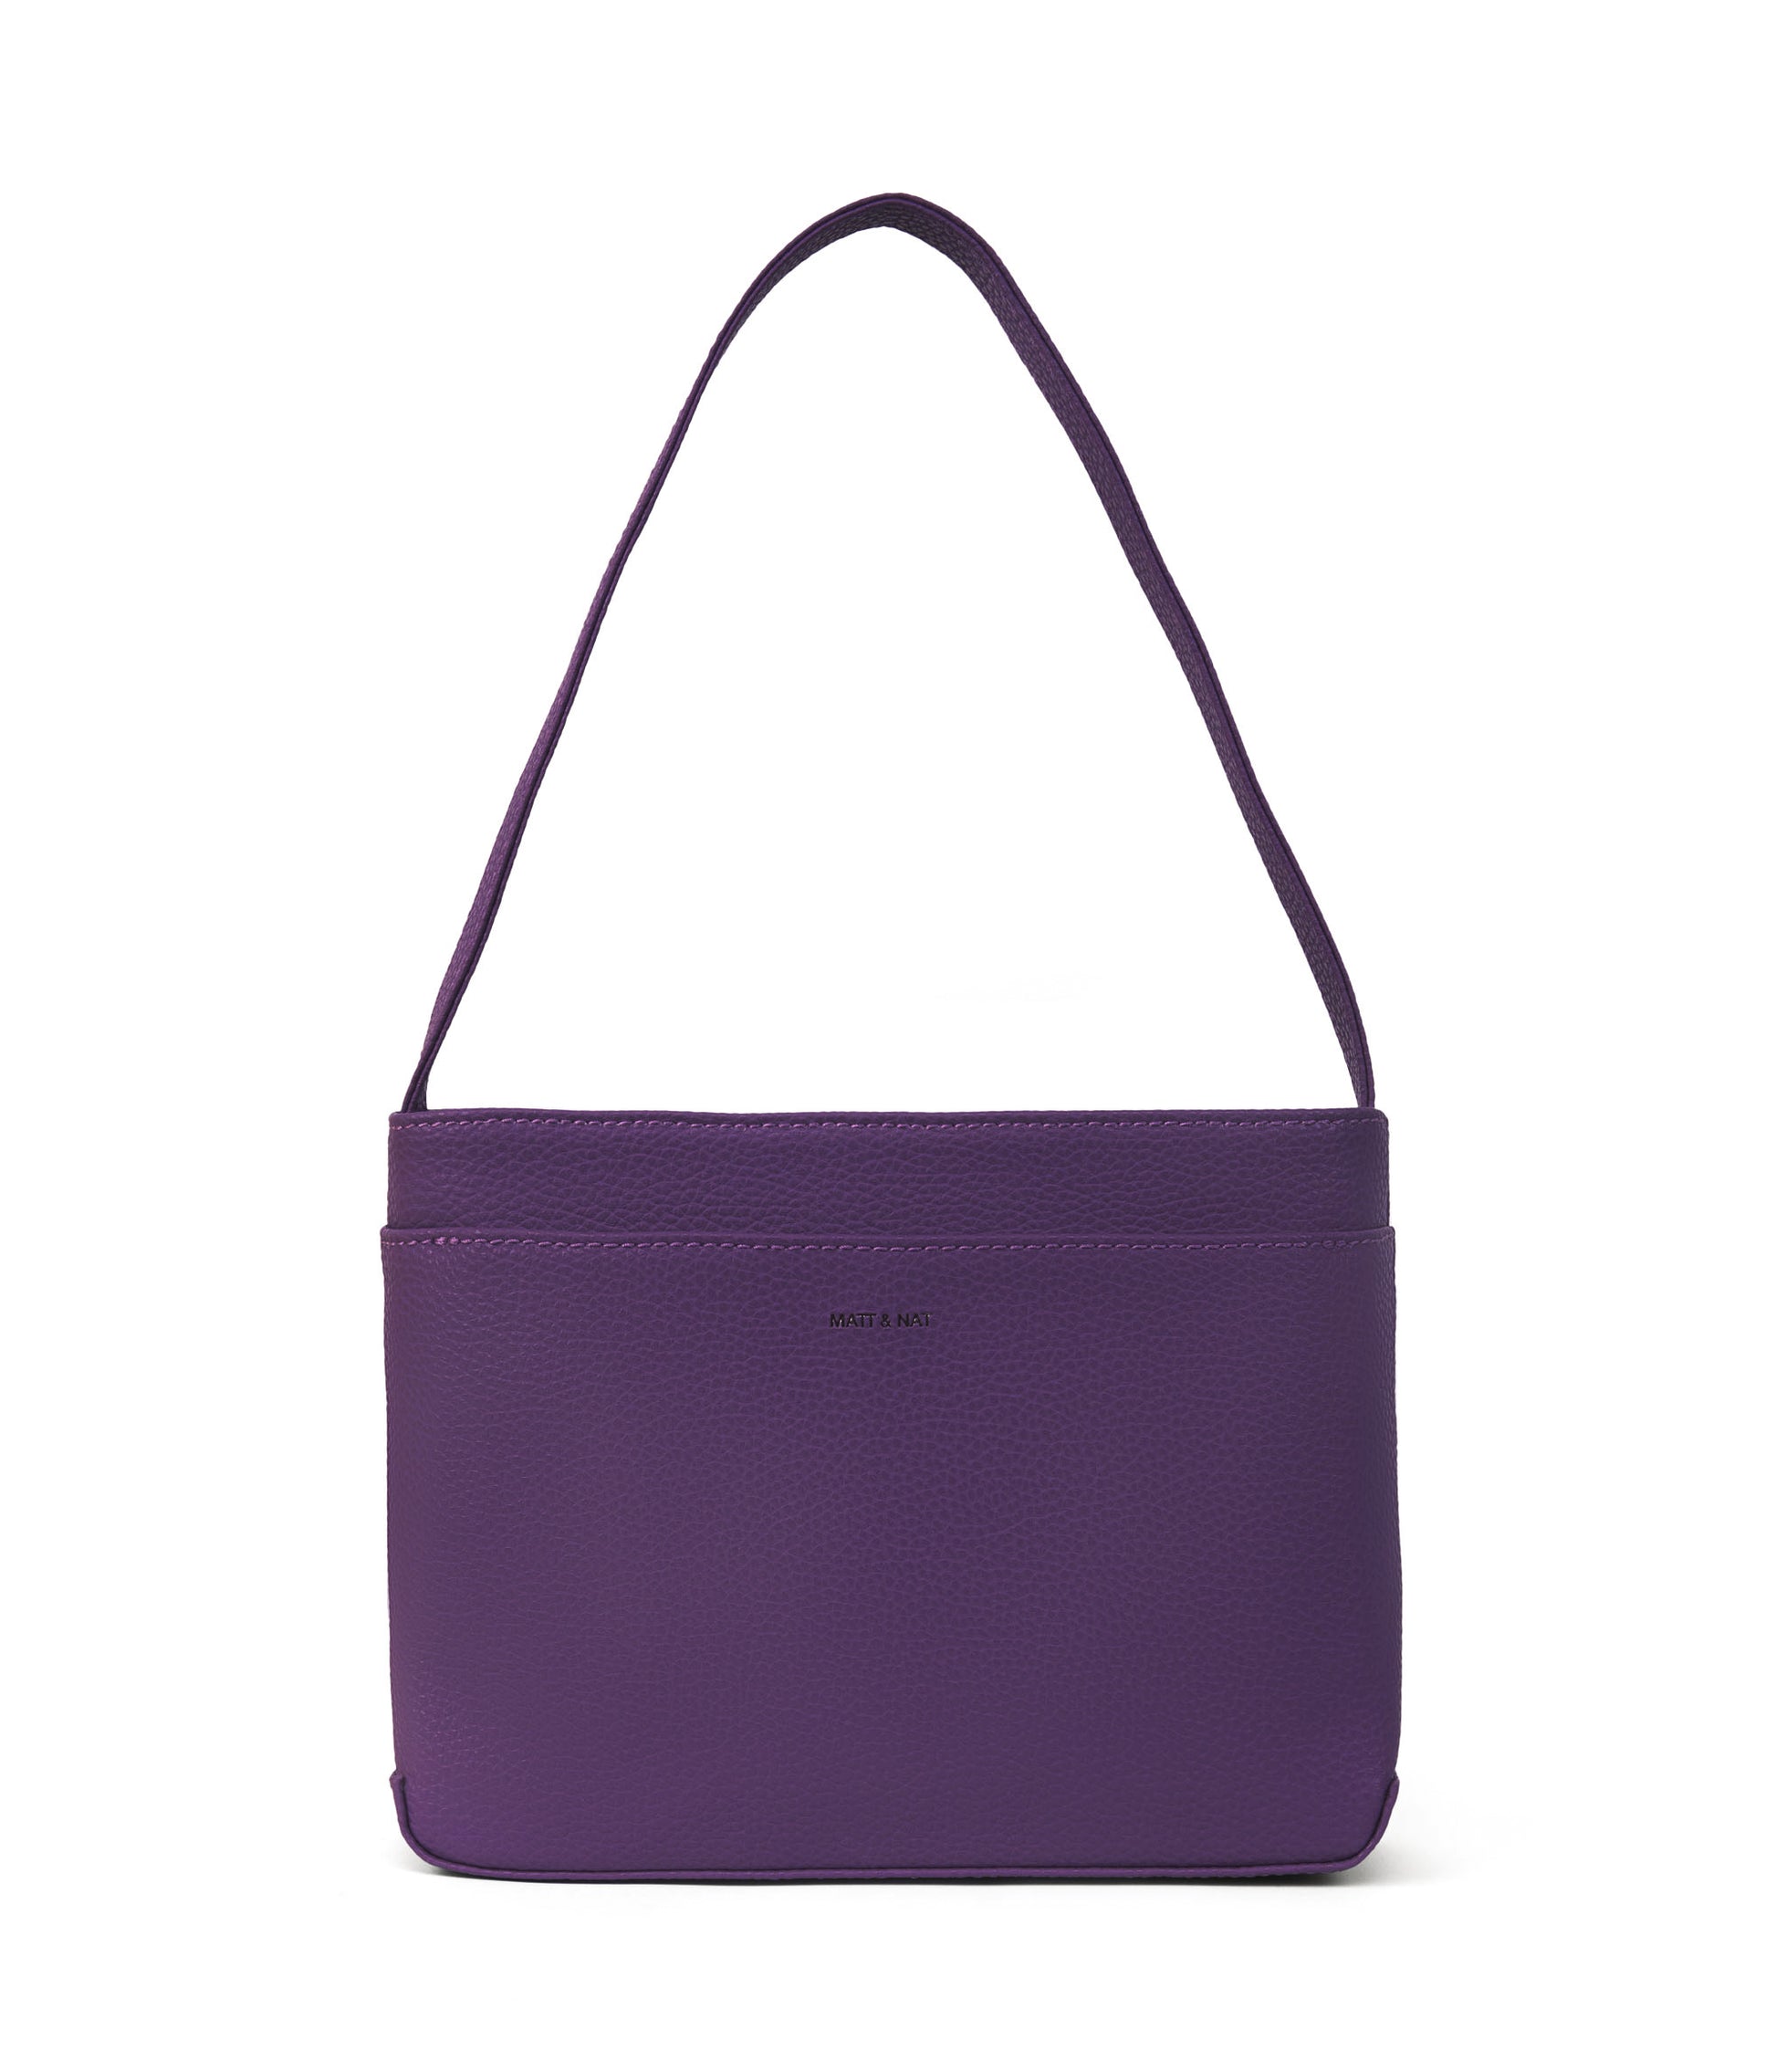 variant:: violet -- luisa purity violet